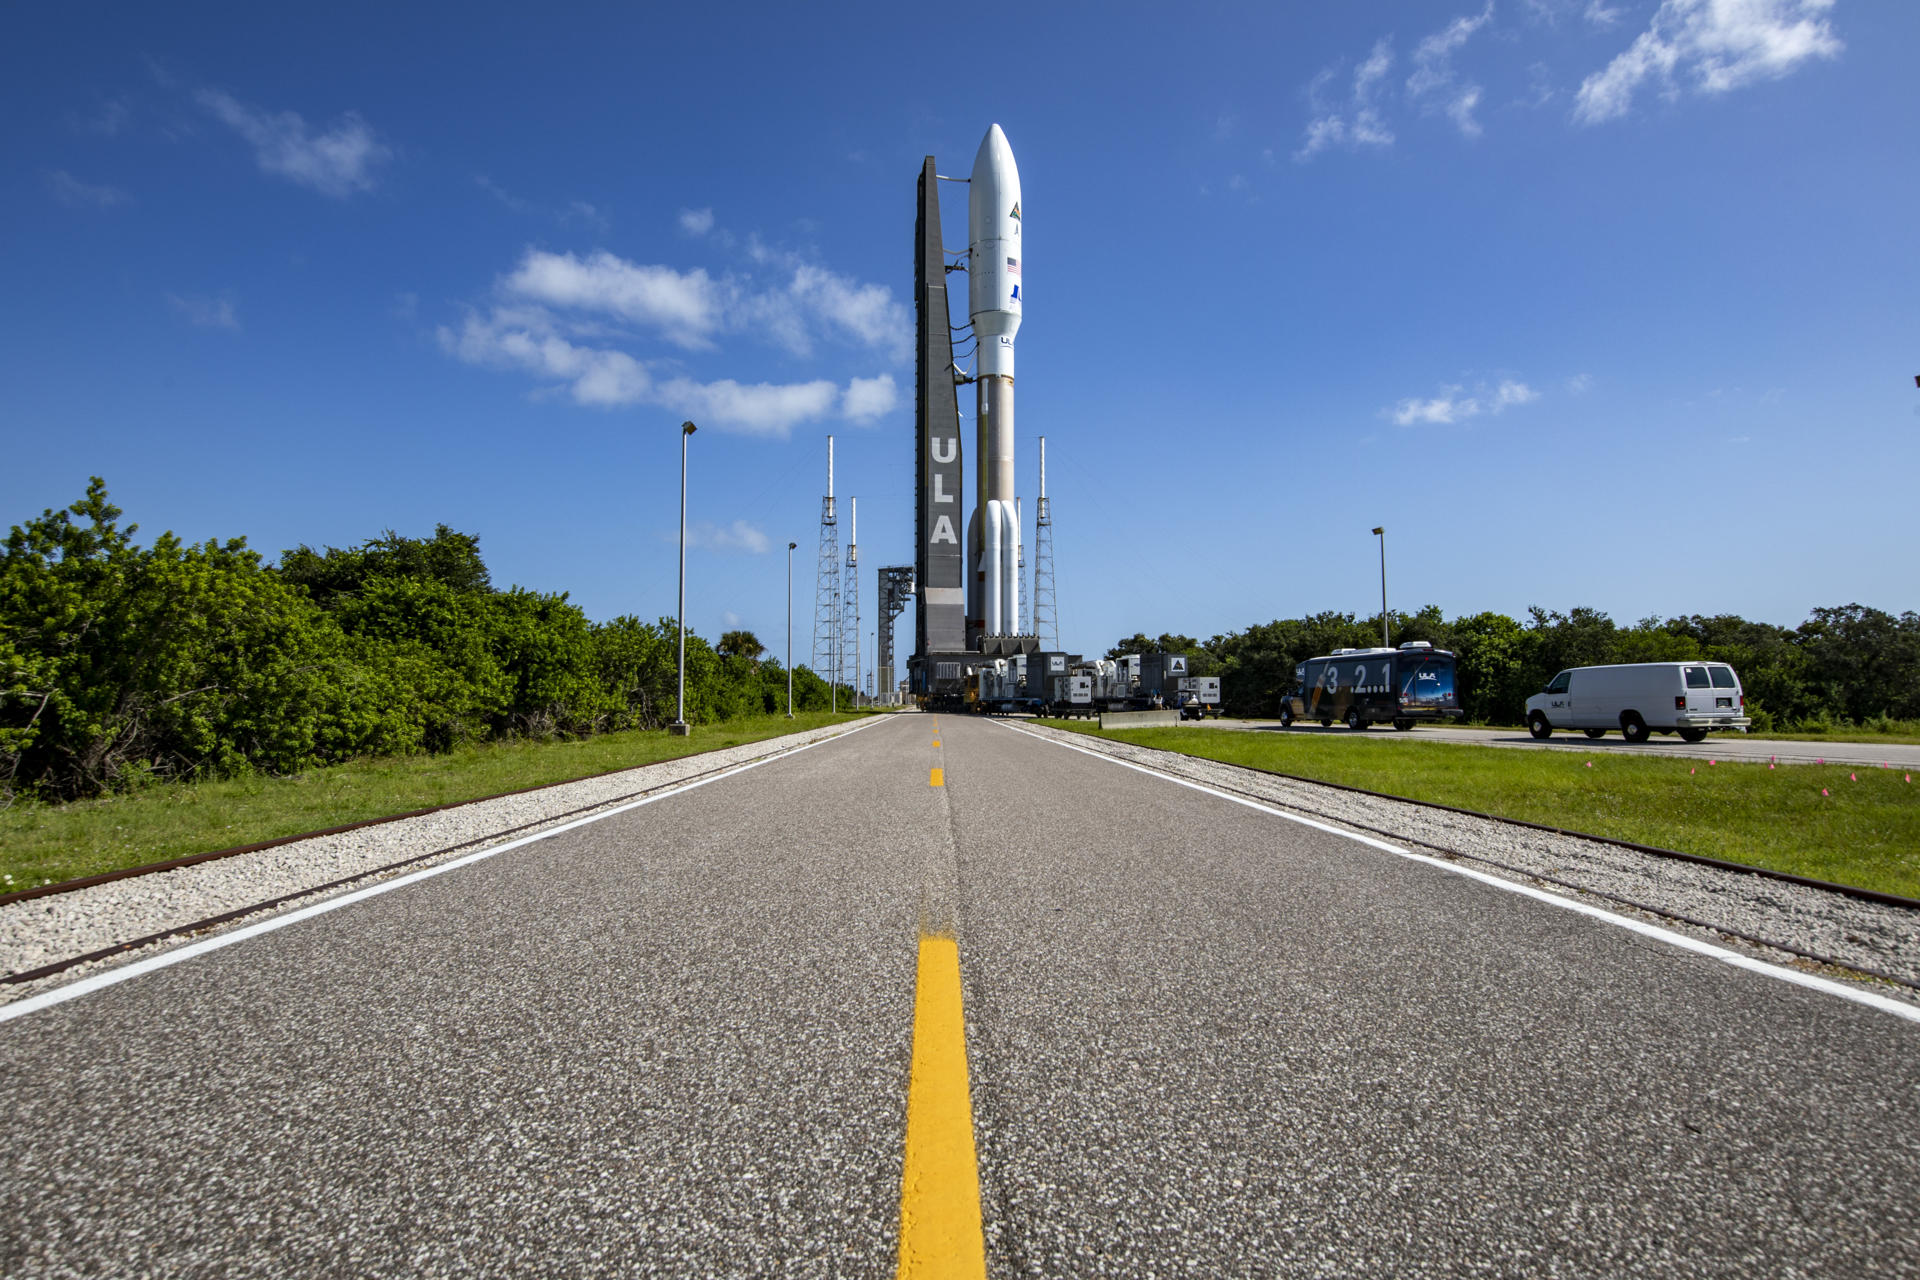 Fotografía cedida por United Launch Alliance (ULA) donde se muestra su cohete Atlas V que lleva la misión Silent Barker/NROL-107 para la Oficina Nacional de Reconocimiento (NRO) y la Fuerza Espacial de los Estados Unidos. EFE/ULA
